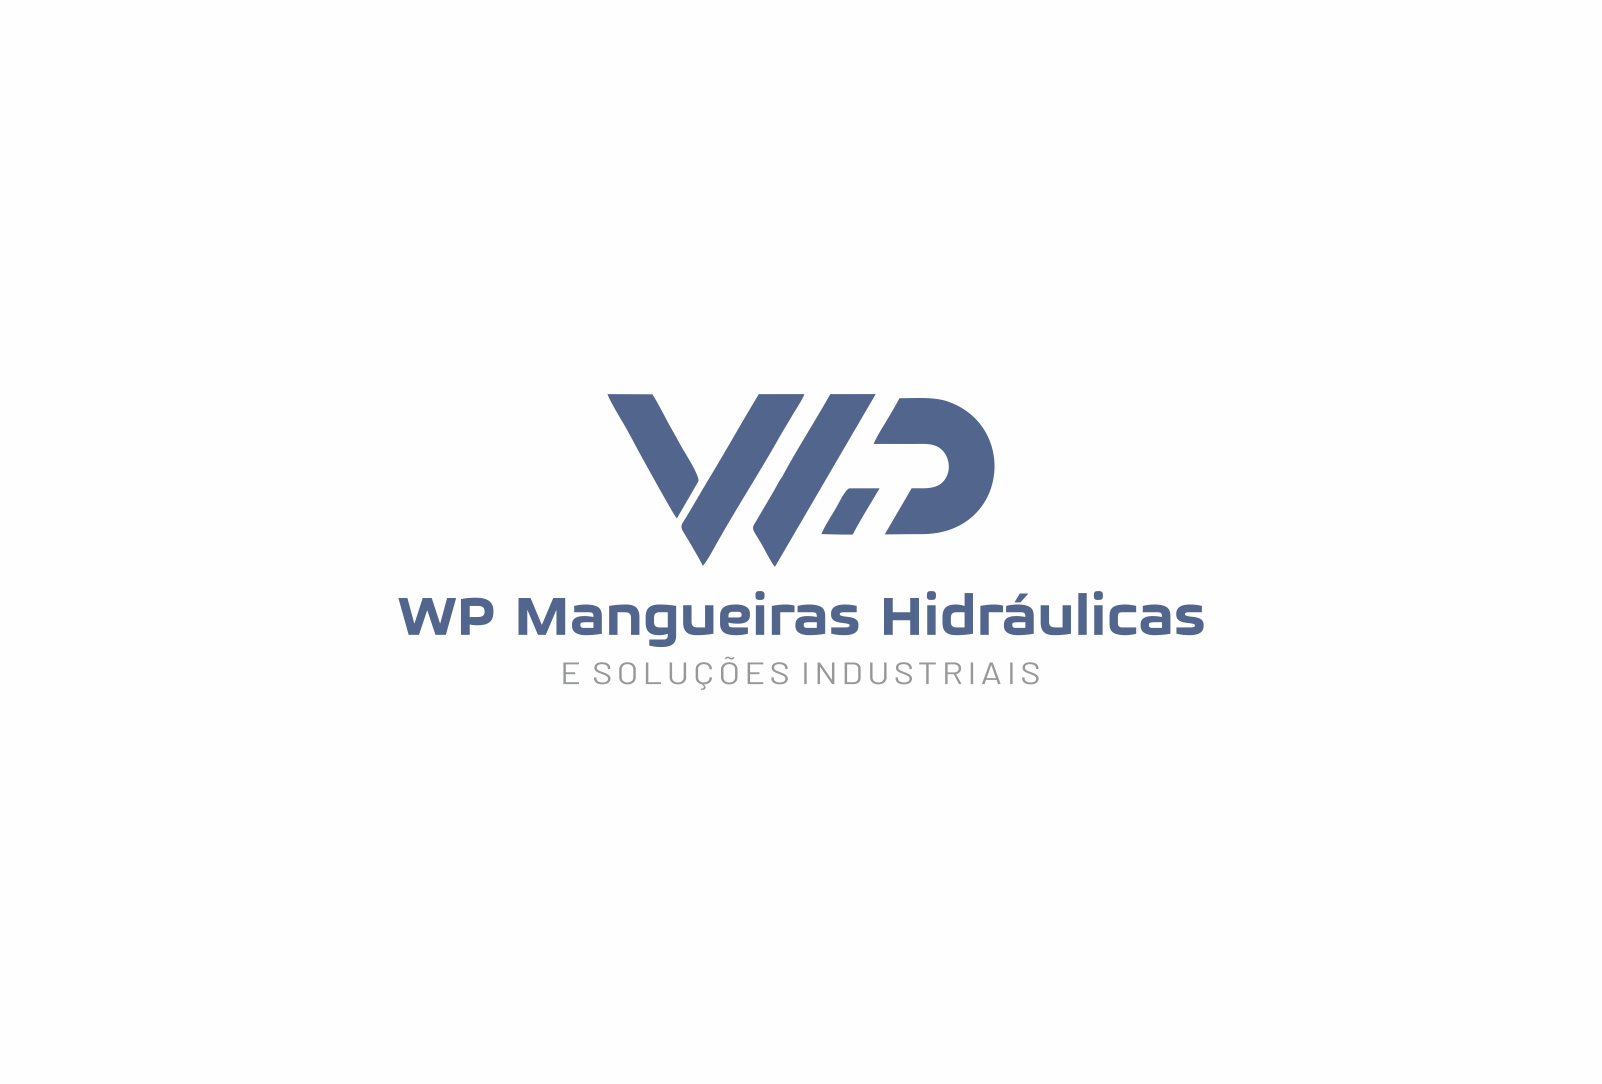 WP Mangueiras  Hidraulicas Logo